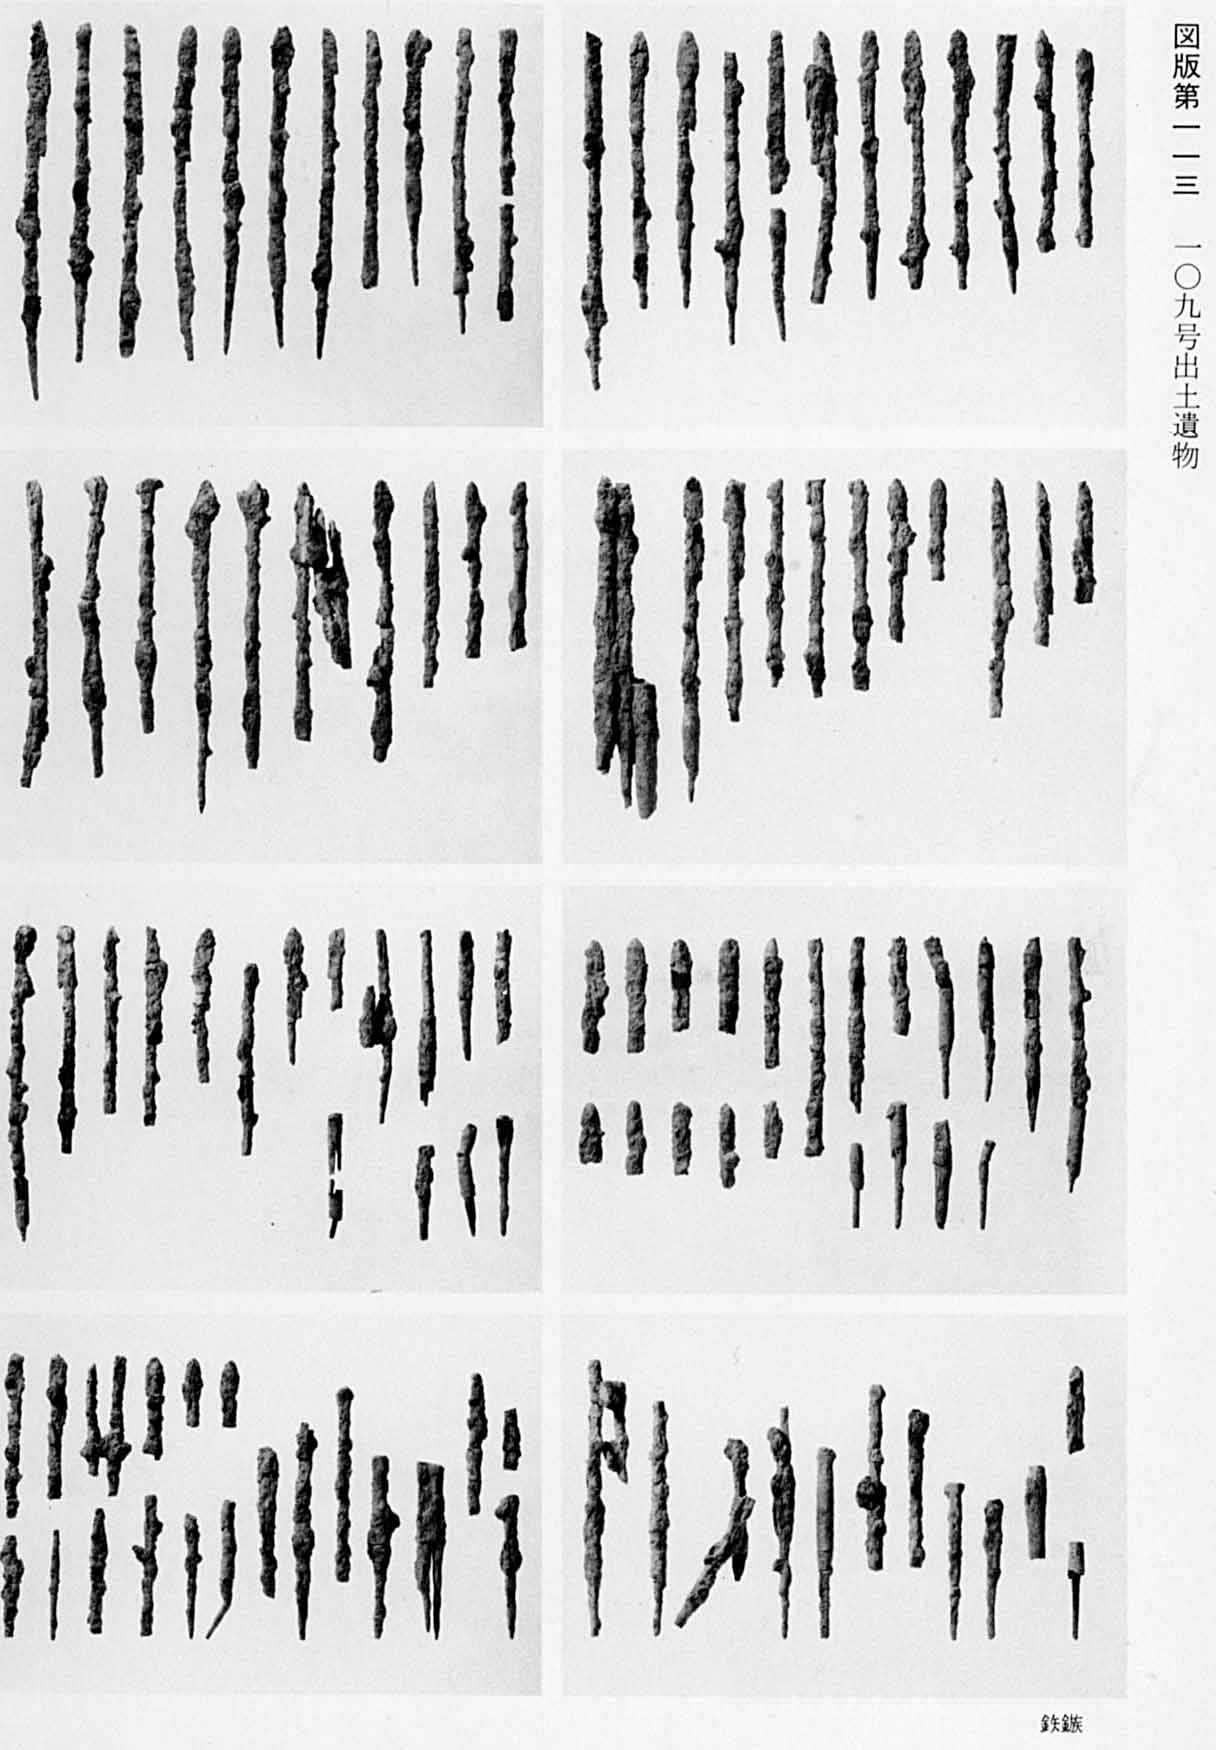 数多くの古代の矢じりが置かれている様子の写真が8枚並んでいる、図版113 109号遺物出土遺物のモノクロ写真